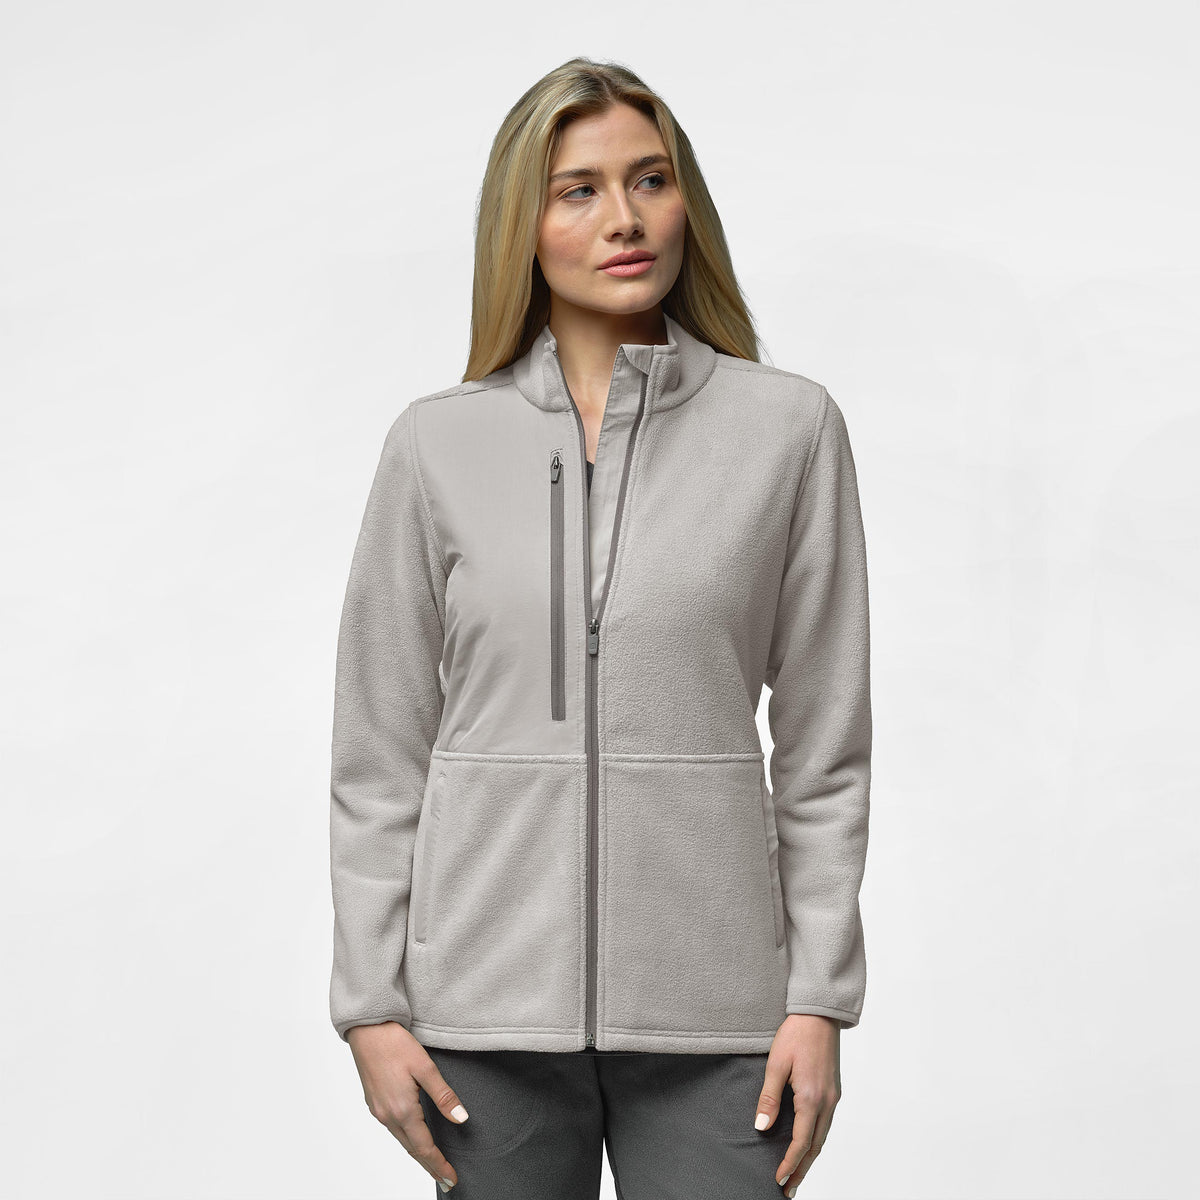 Slate Women's Micro Fleece Zip Jacket - Taupe